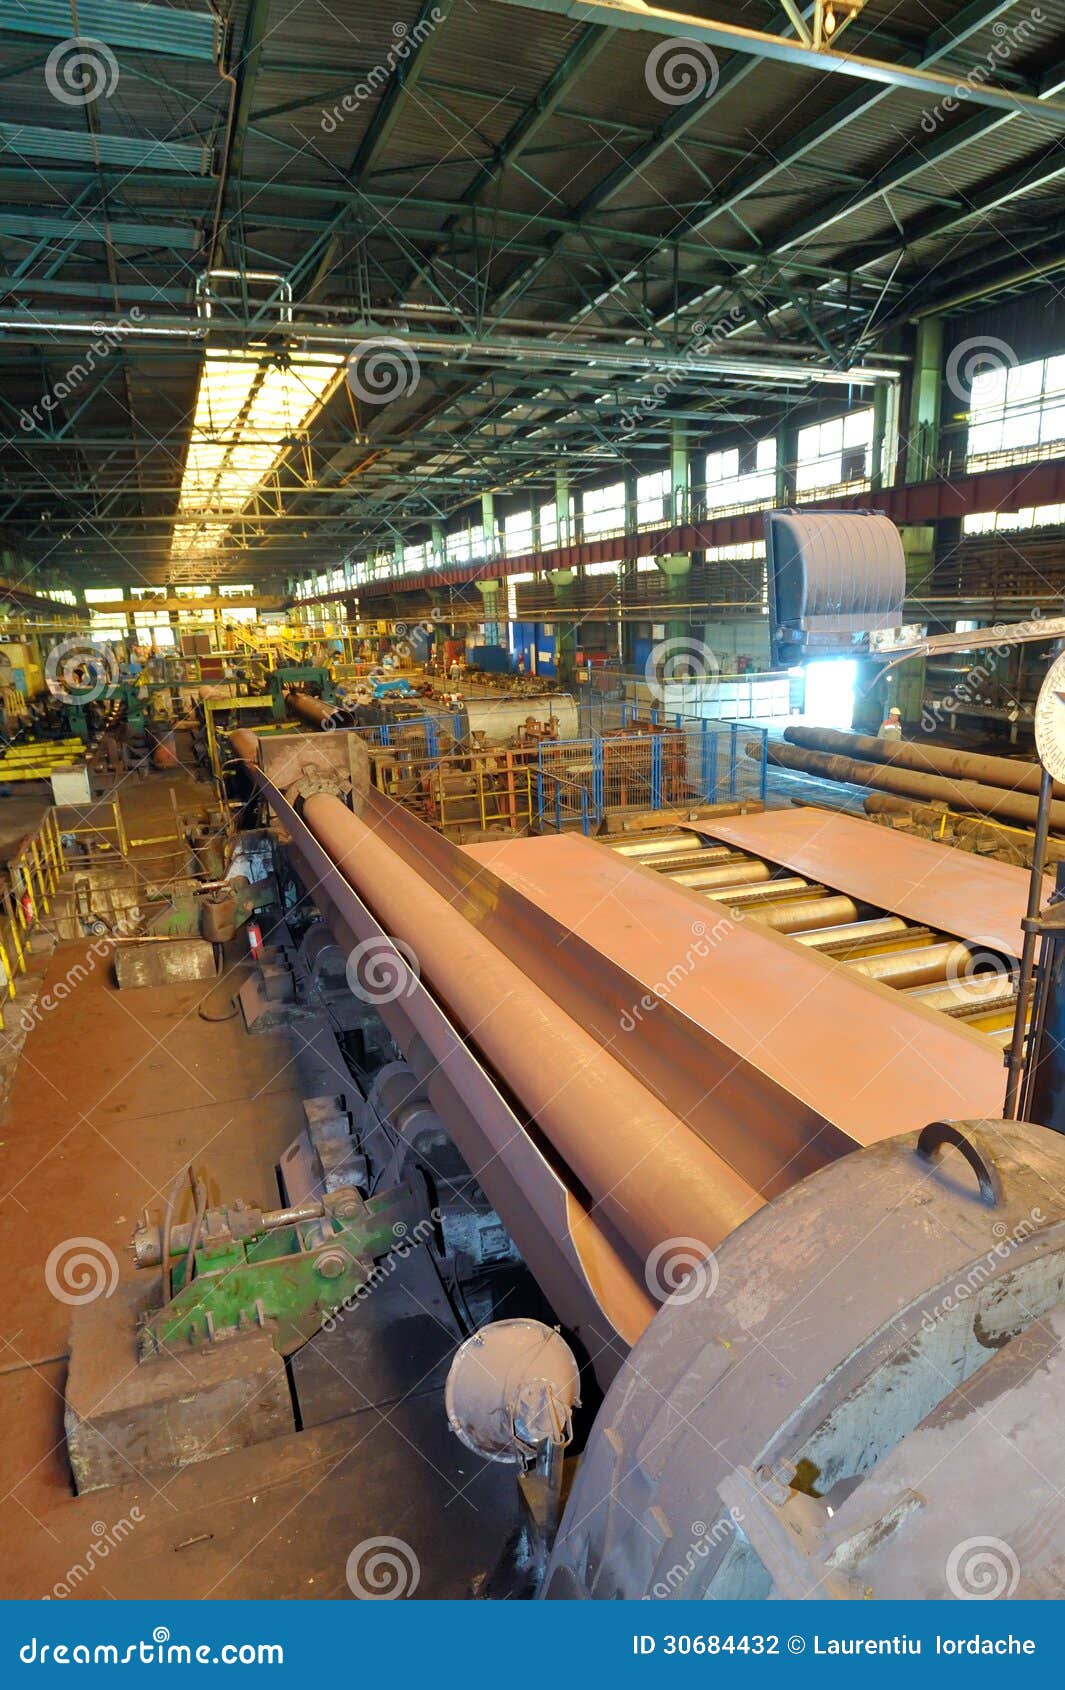 photographie stock machine industrielle pour faire des tuyaux d acier image